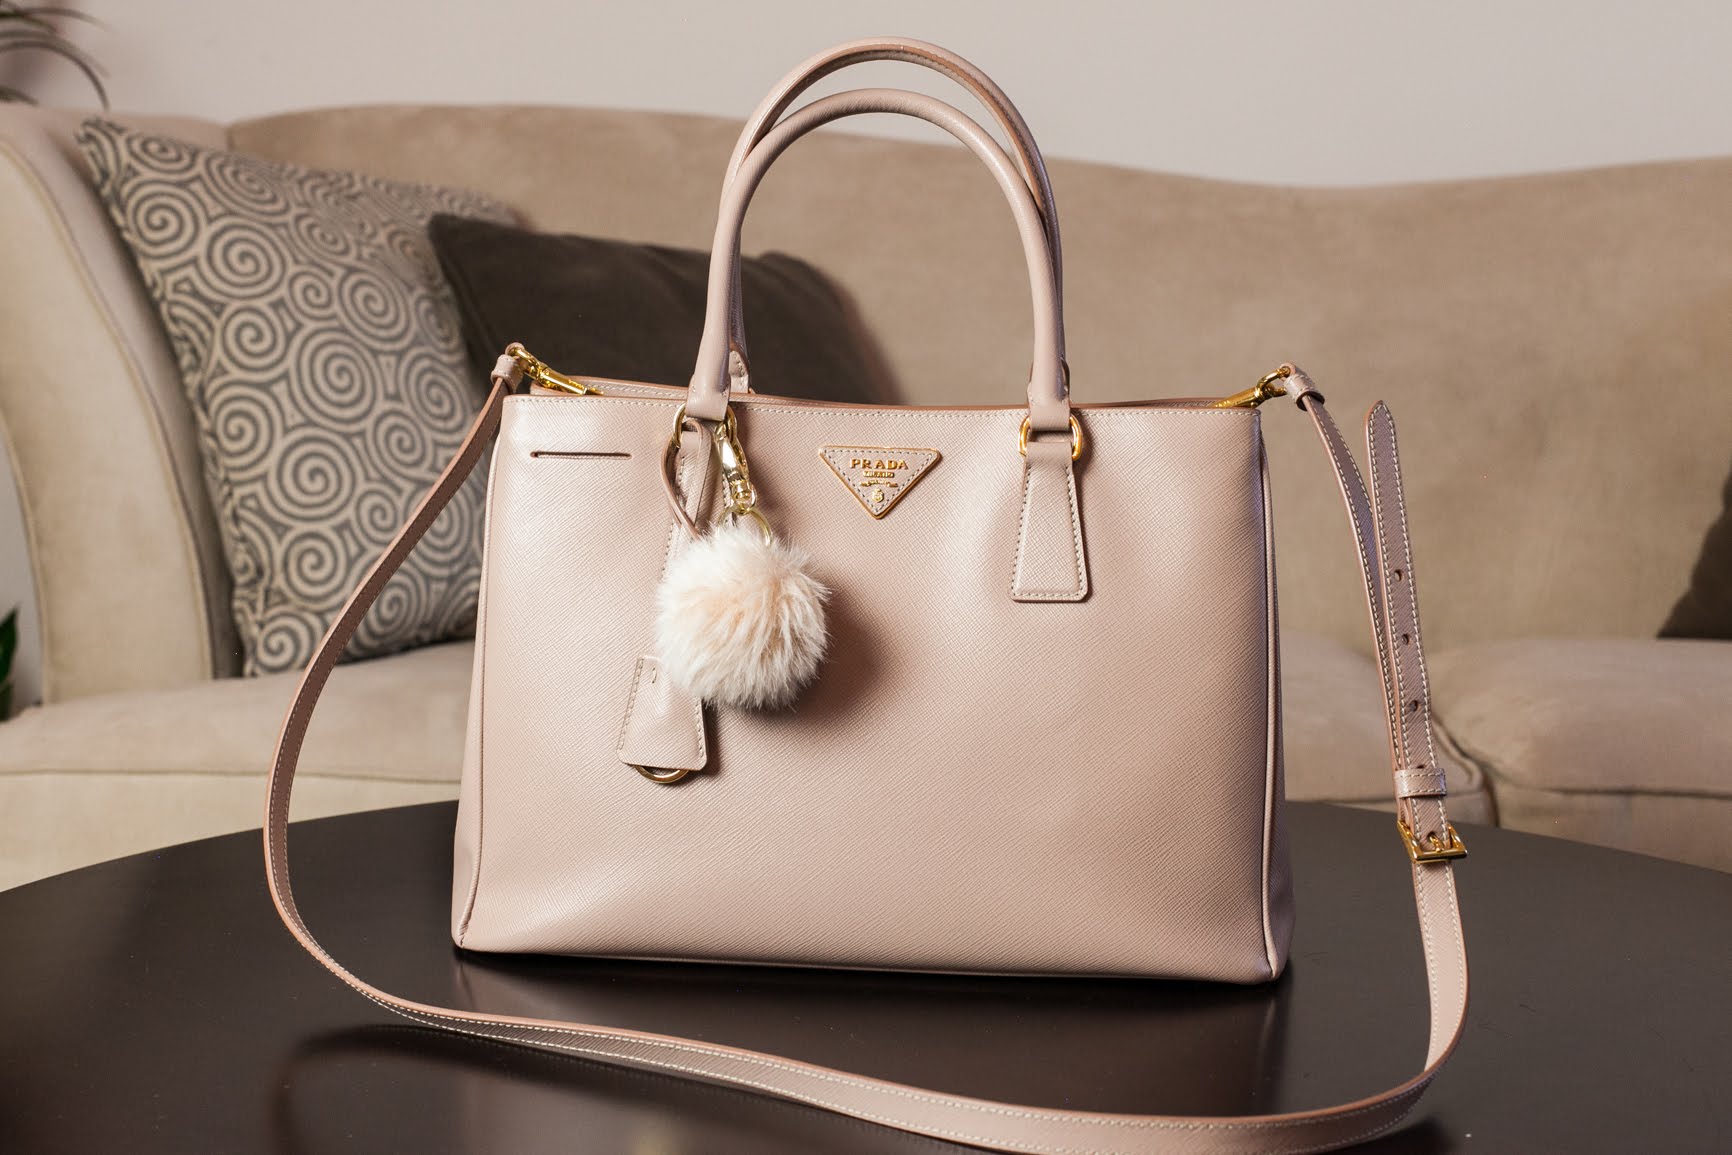 Prada handbags, designer, designer handbag, prada handbag, luxury fashion, designer fashion, handbags,